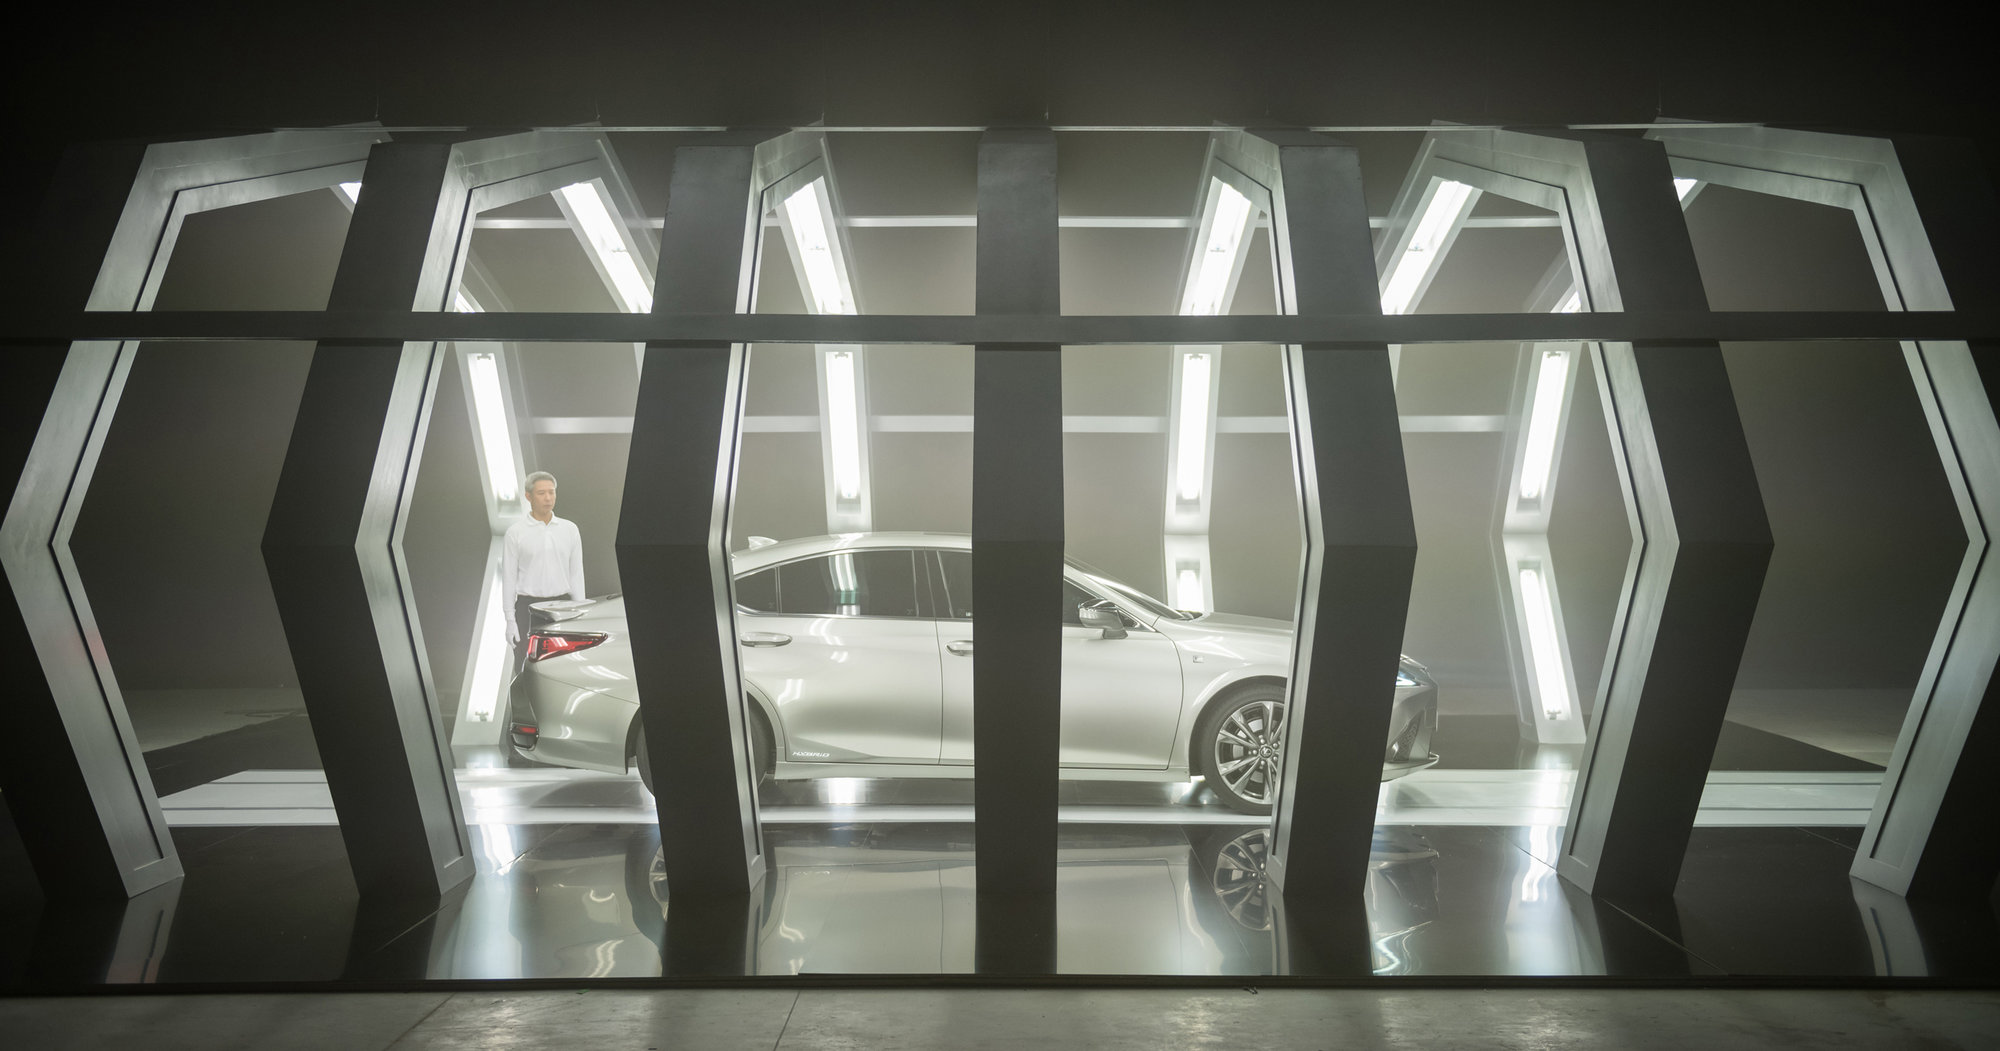 Galería: Lexus lanza el nuevo ES 300h con el primer anuncio del mundo guionizado por inteligencia artificial y rodado por un director oscarizado